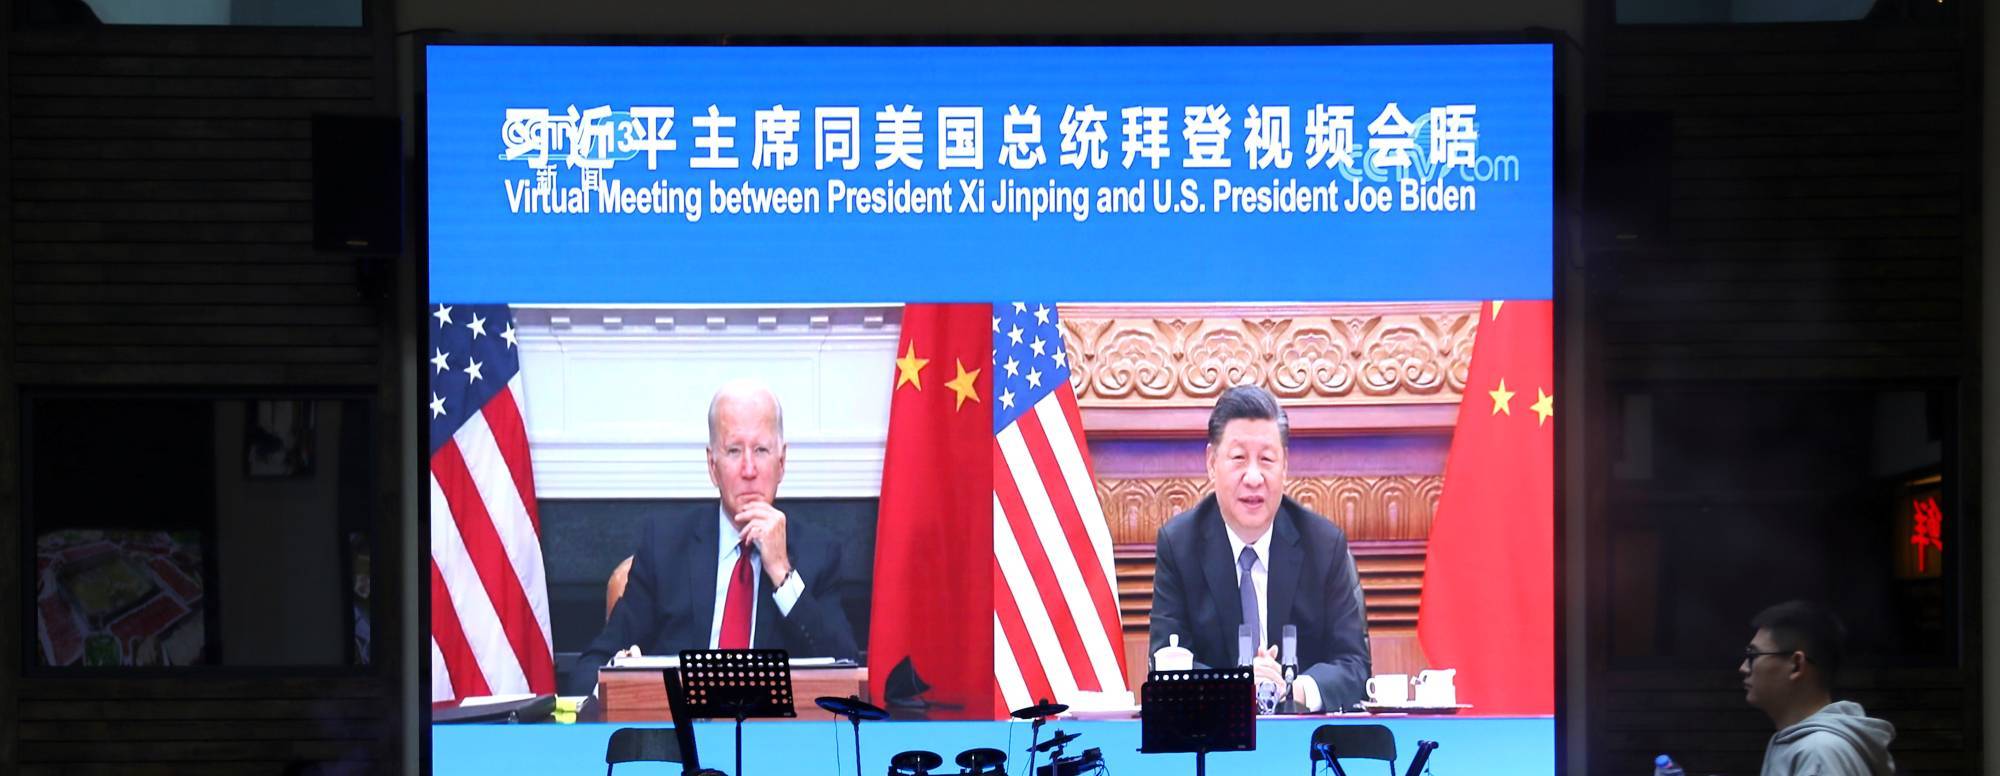 अमेरिका र चीन पत्रकार भिसामा लगाइएको प्रतिबन्ध खुकुलो पार्न सहमत